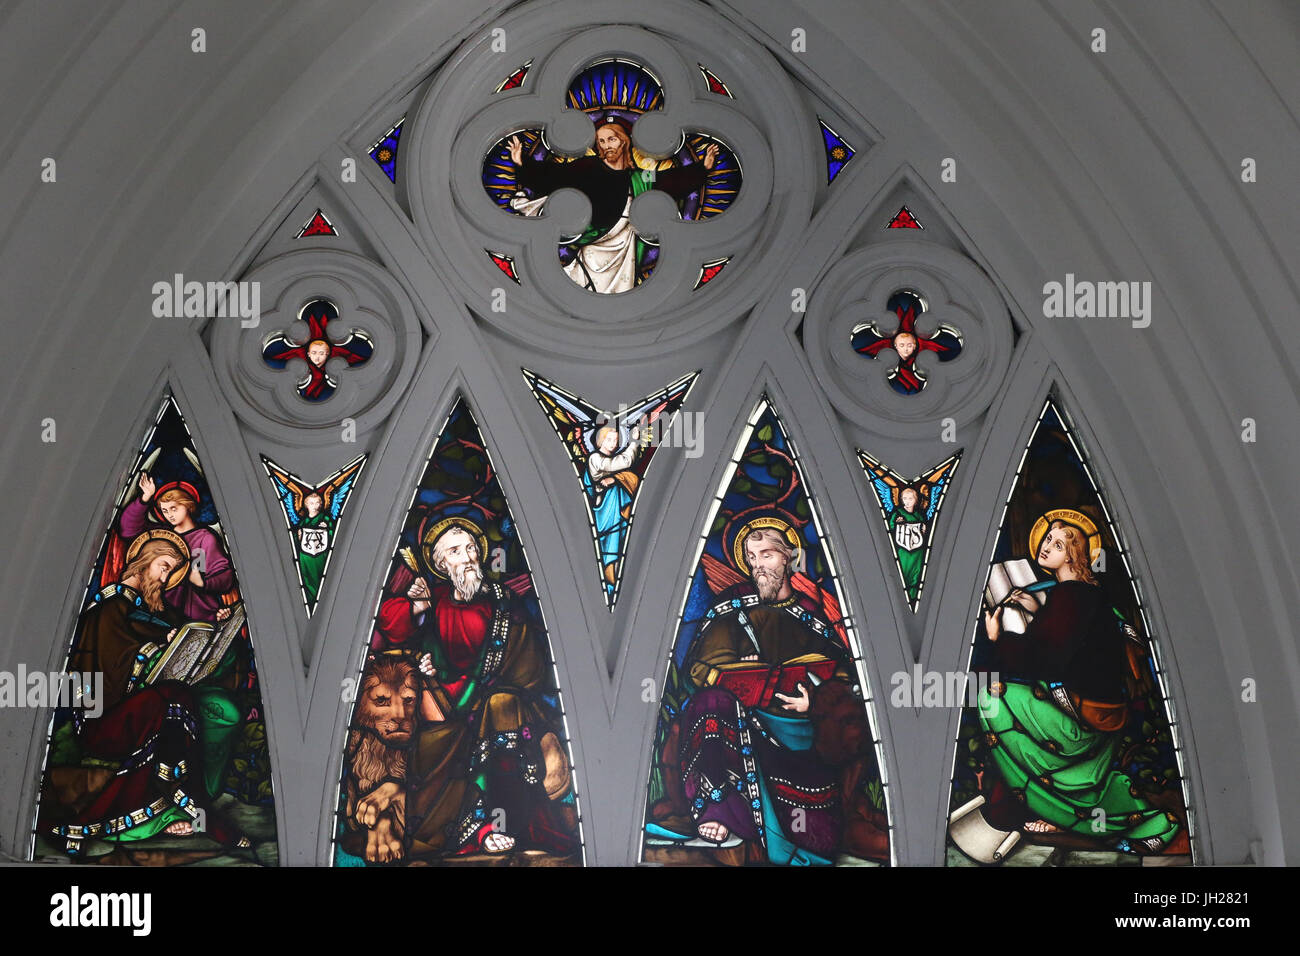 St. Andrews Kathedrale.  Glasmalerei-Fenster. Vier Evangelisten sind Matthäus, Markus, Lukas und Johannes.  Singapur. Stockfoto